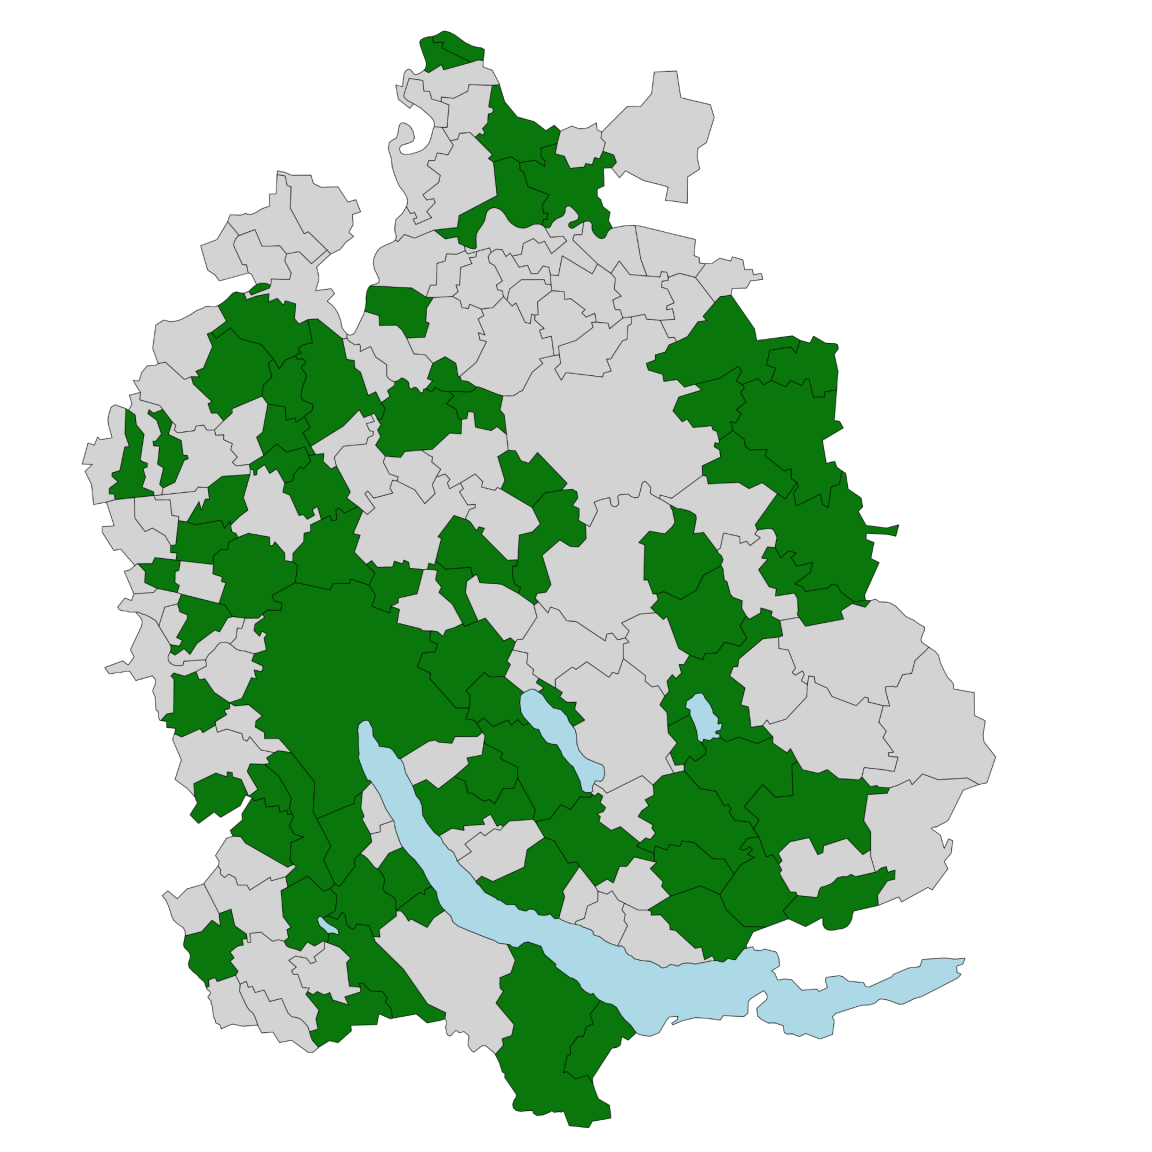 Die Kantonskarte zeigt dunkelgrüne Gemeinden, wo eBaugesucheZH verfügbar ist und hellgrüne Gemeinden, wo die Anbindung in nächster Zeit geplant ist.